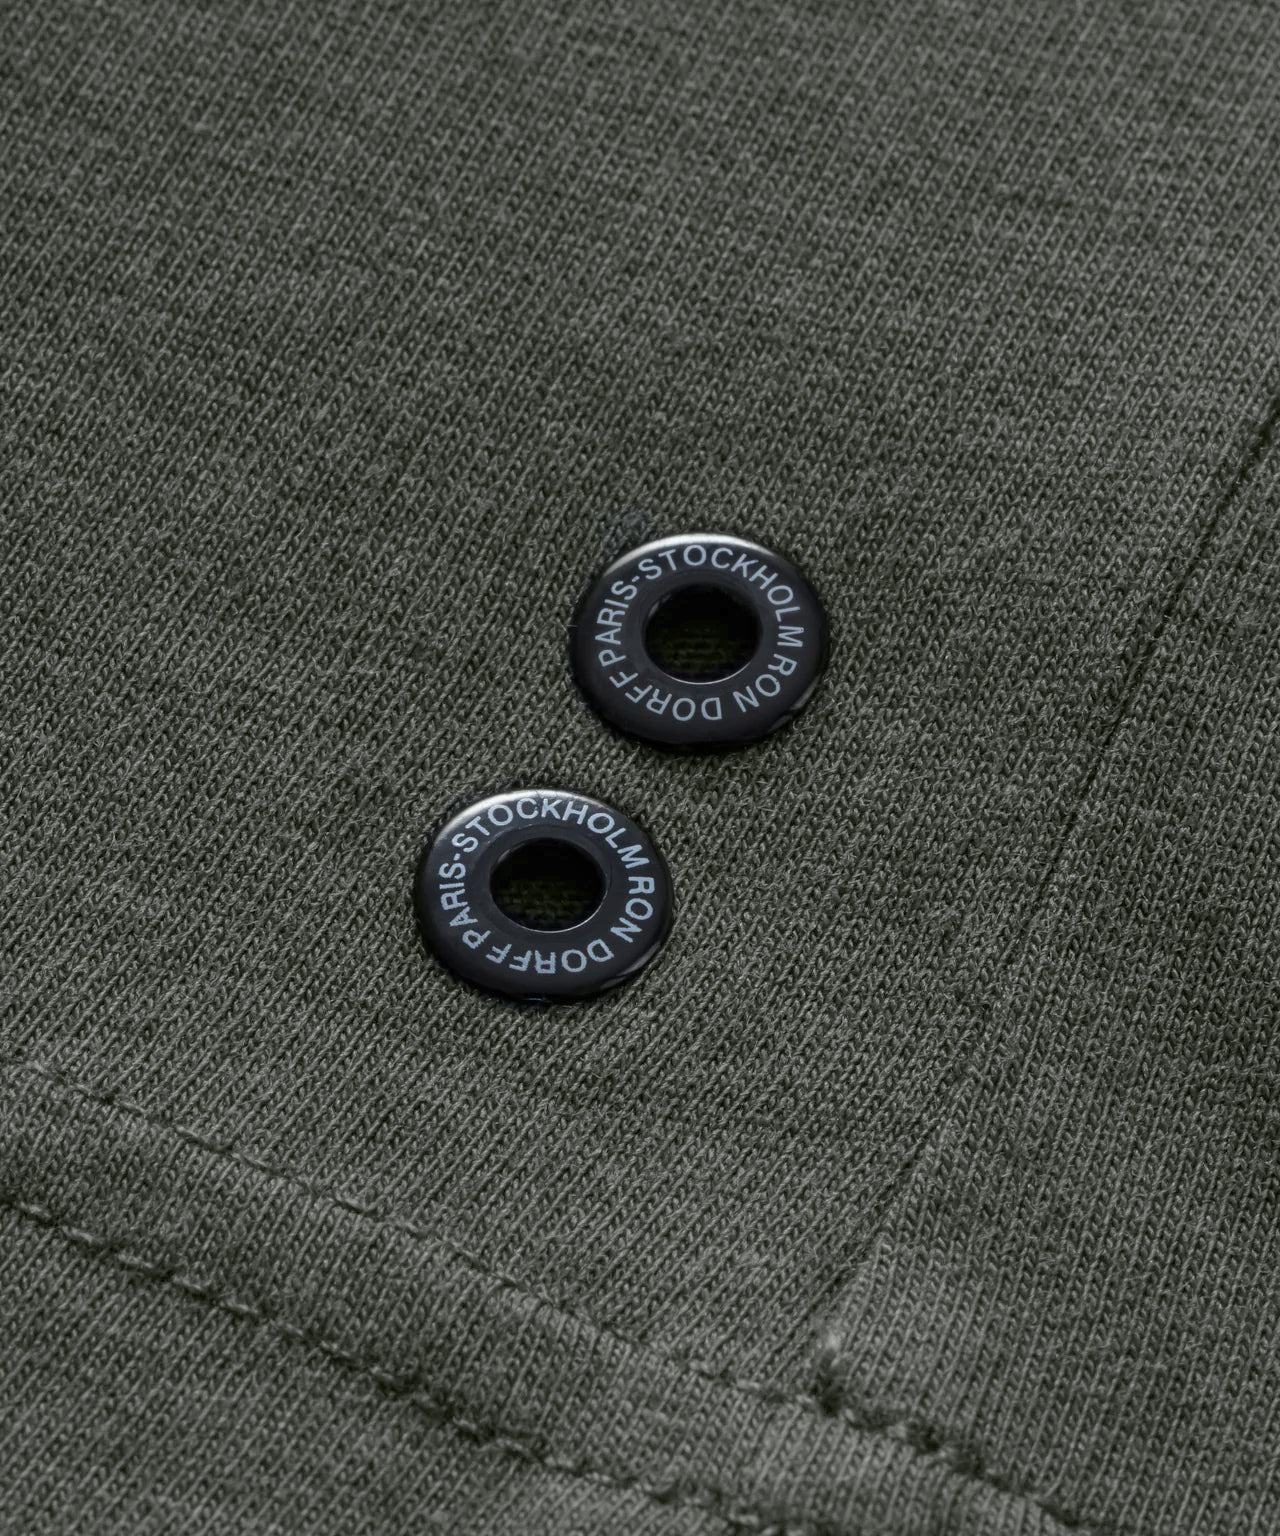 T-shirt col rond en coton: Vert militaire